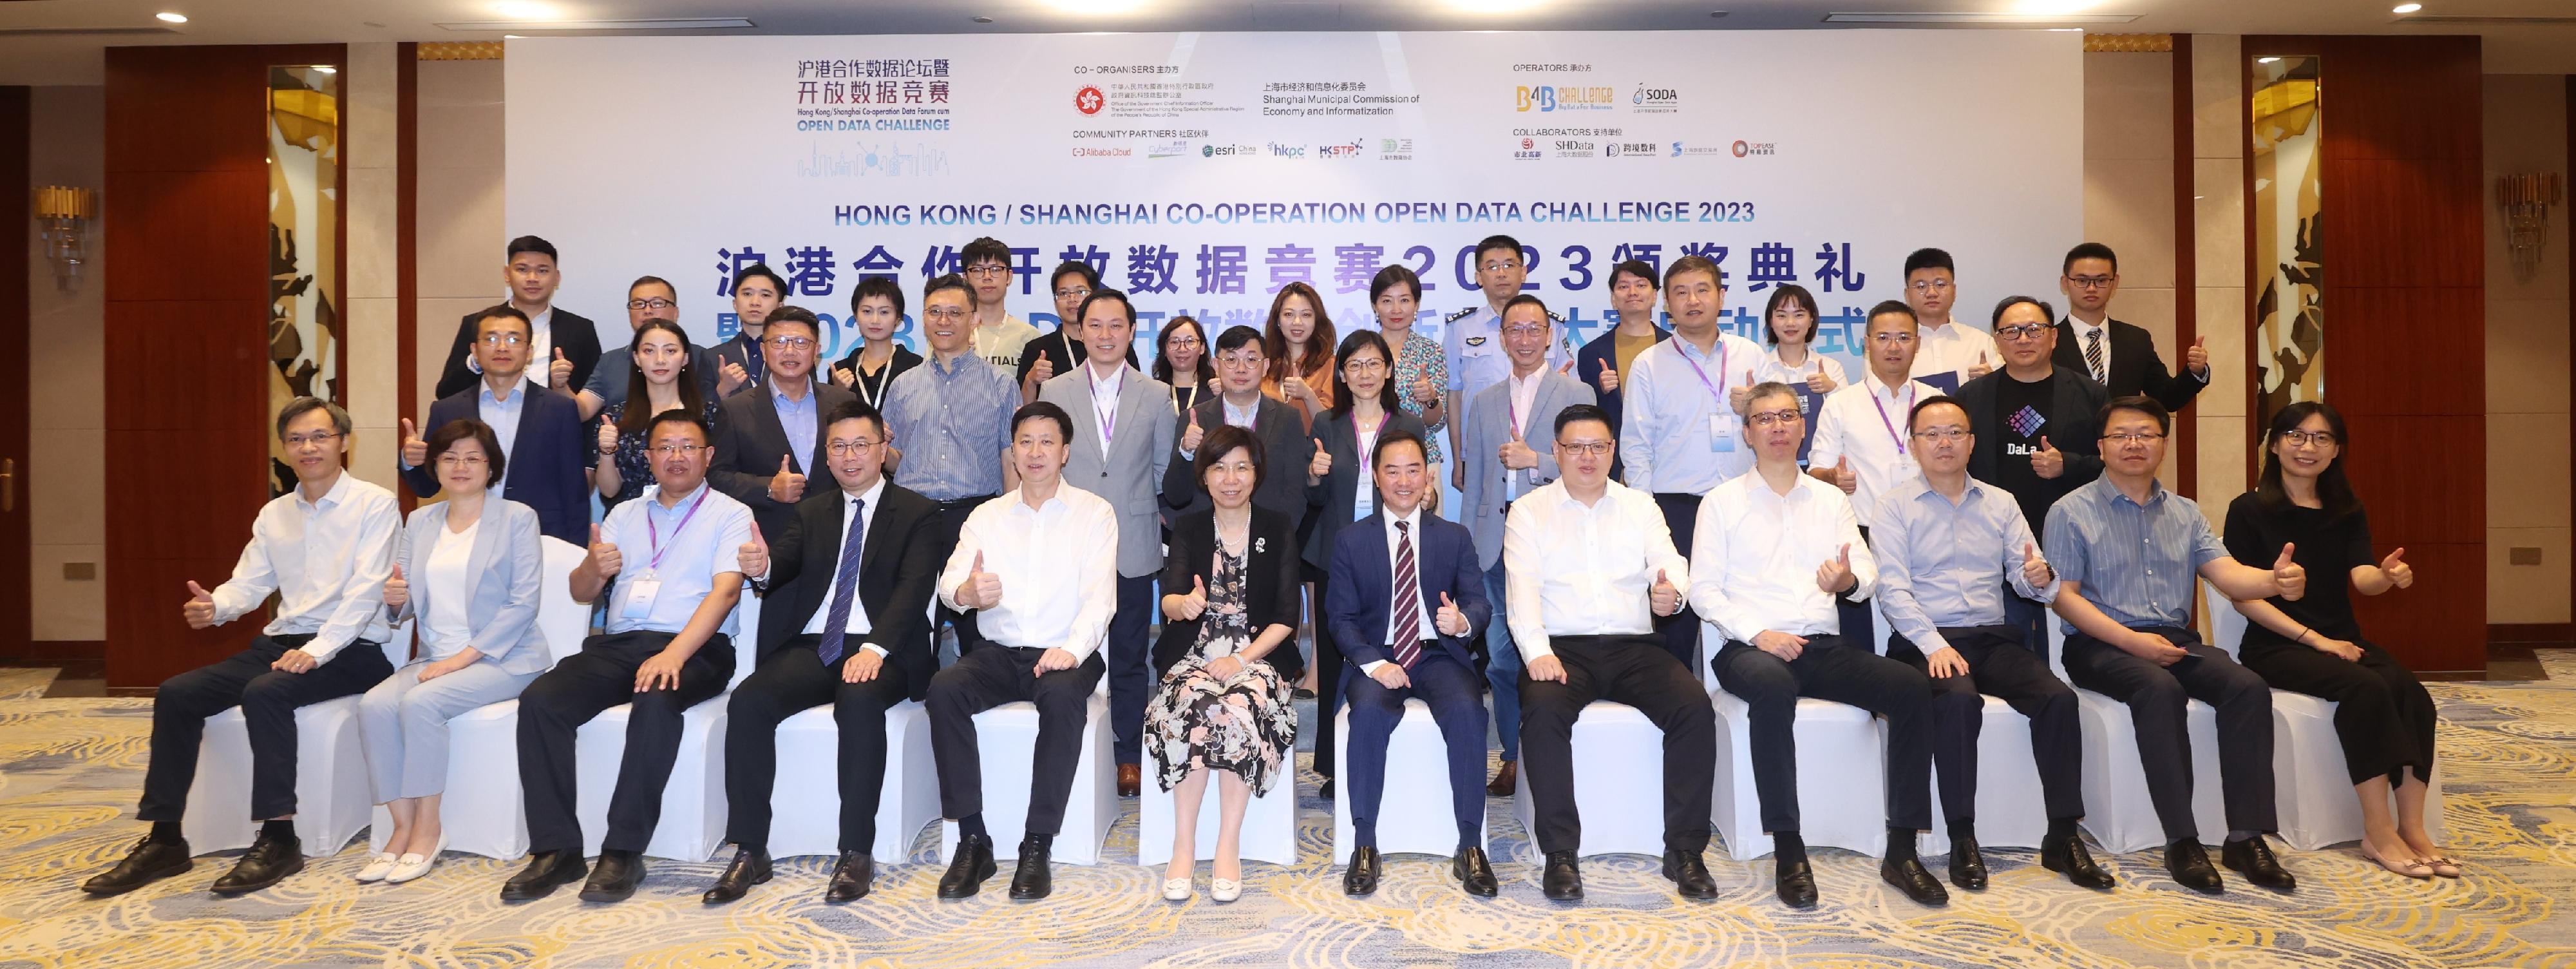 政府资讯科技总监黄志光（前排右六）今日（八月十四日）在上海出席首届「沪港合作开放数据竞赛」颁奖典礼，与一众竞赛伙伴、评审和队伍合照。